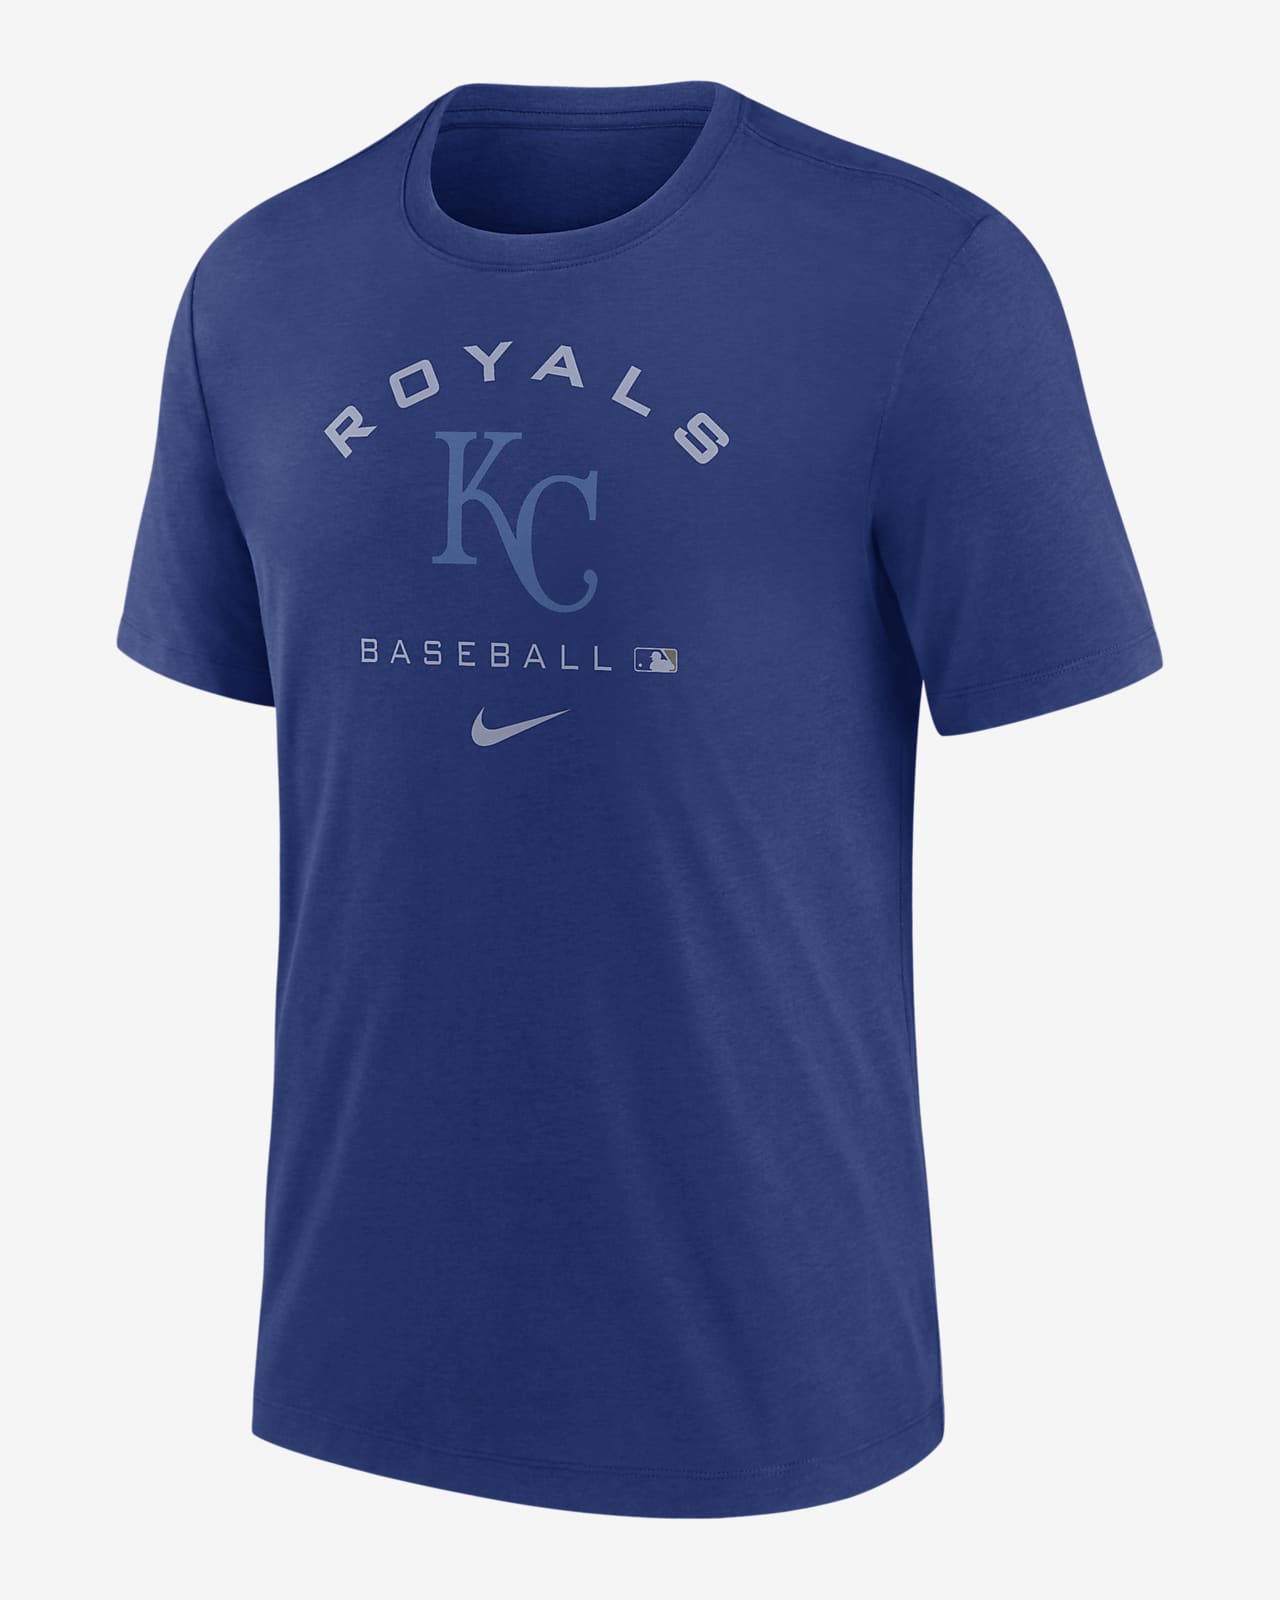 KC Royals Shirt Royals Shirt KC Baseball Shirt Kansas City 